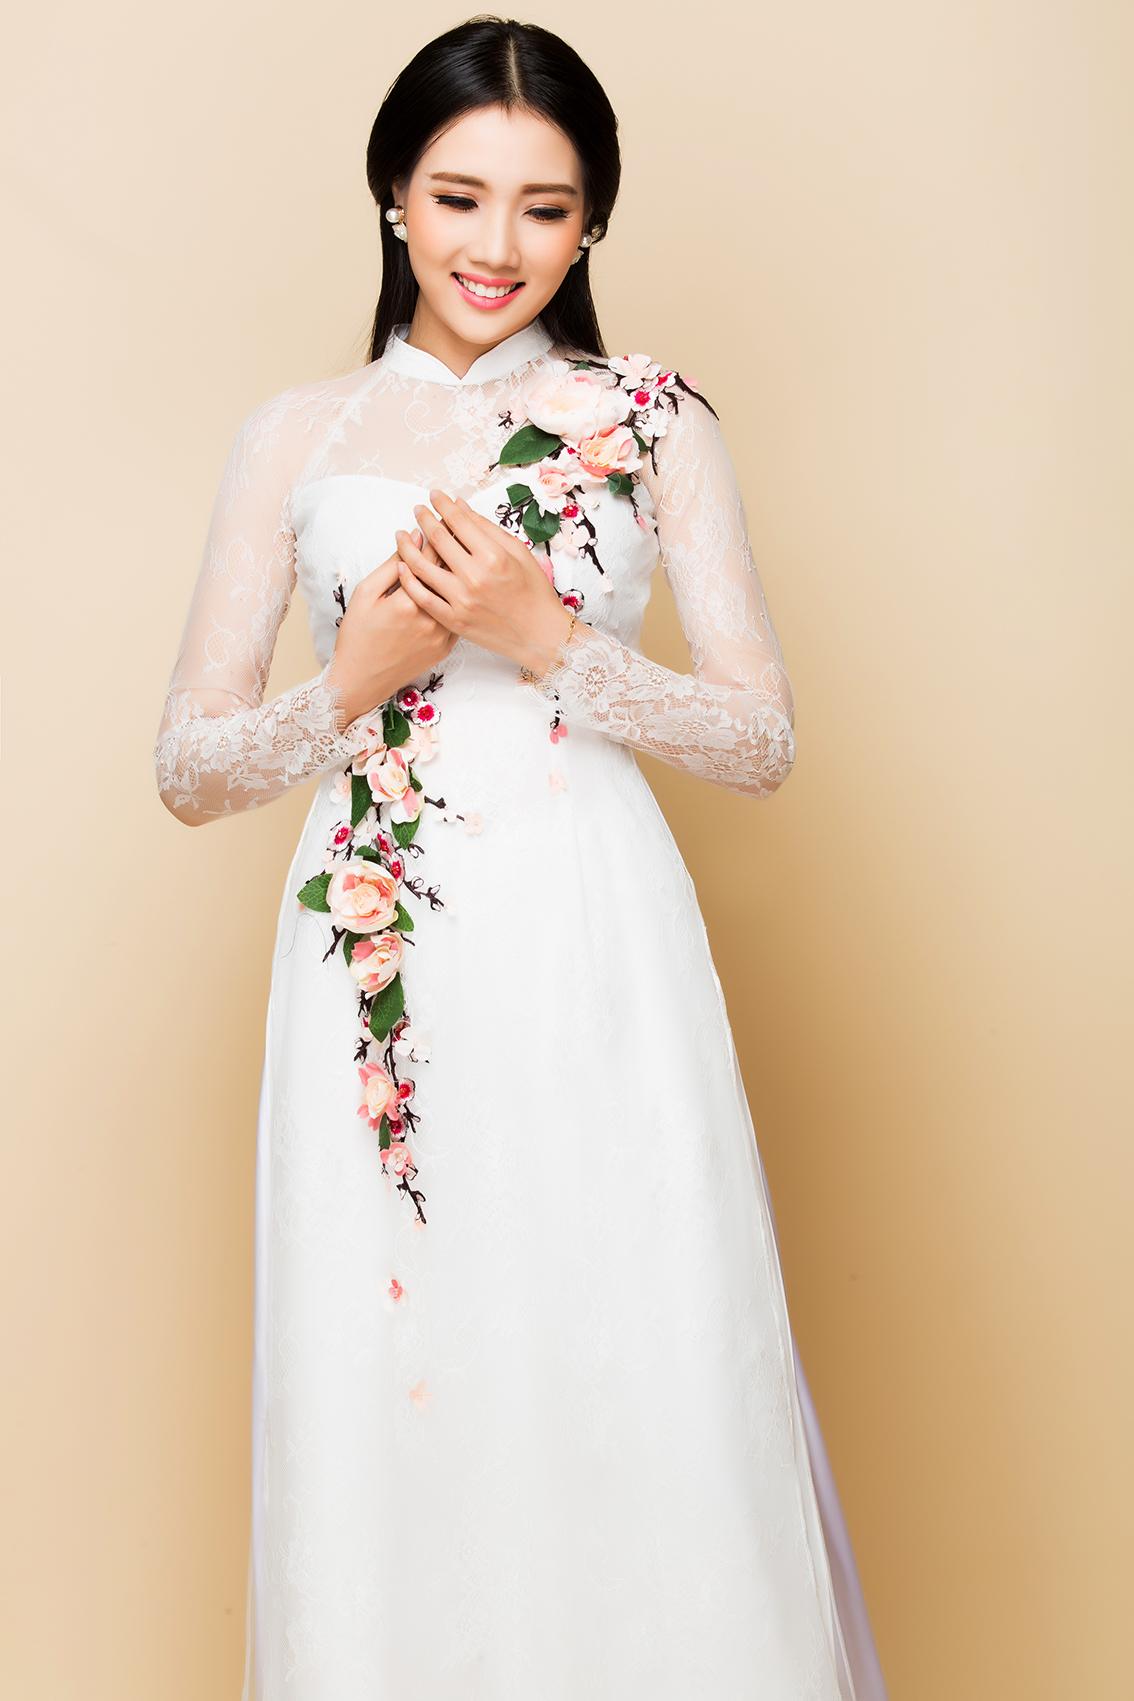 Ngày cưới ai cũng mong muốn tìm cho mình một chiếc áo dài ưng ý, hãy cùng Marry tham khảo những thiết kế áo dài mới nhất từ thương hiệu Minh Châu.